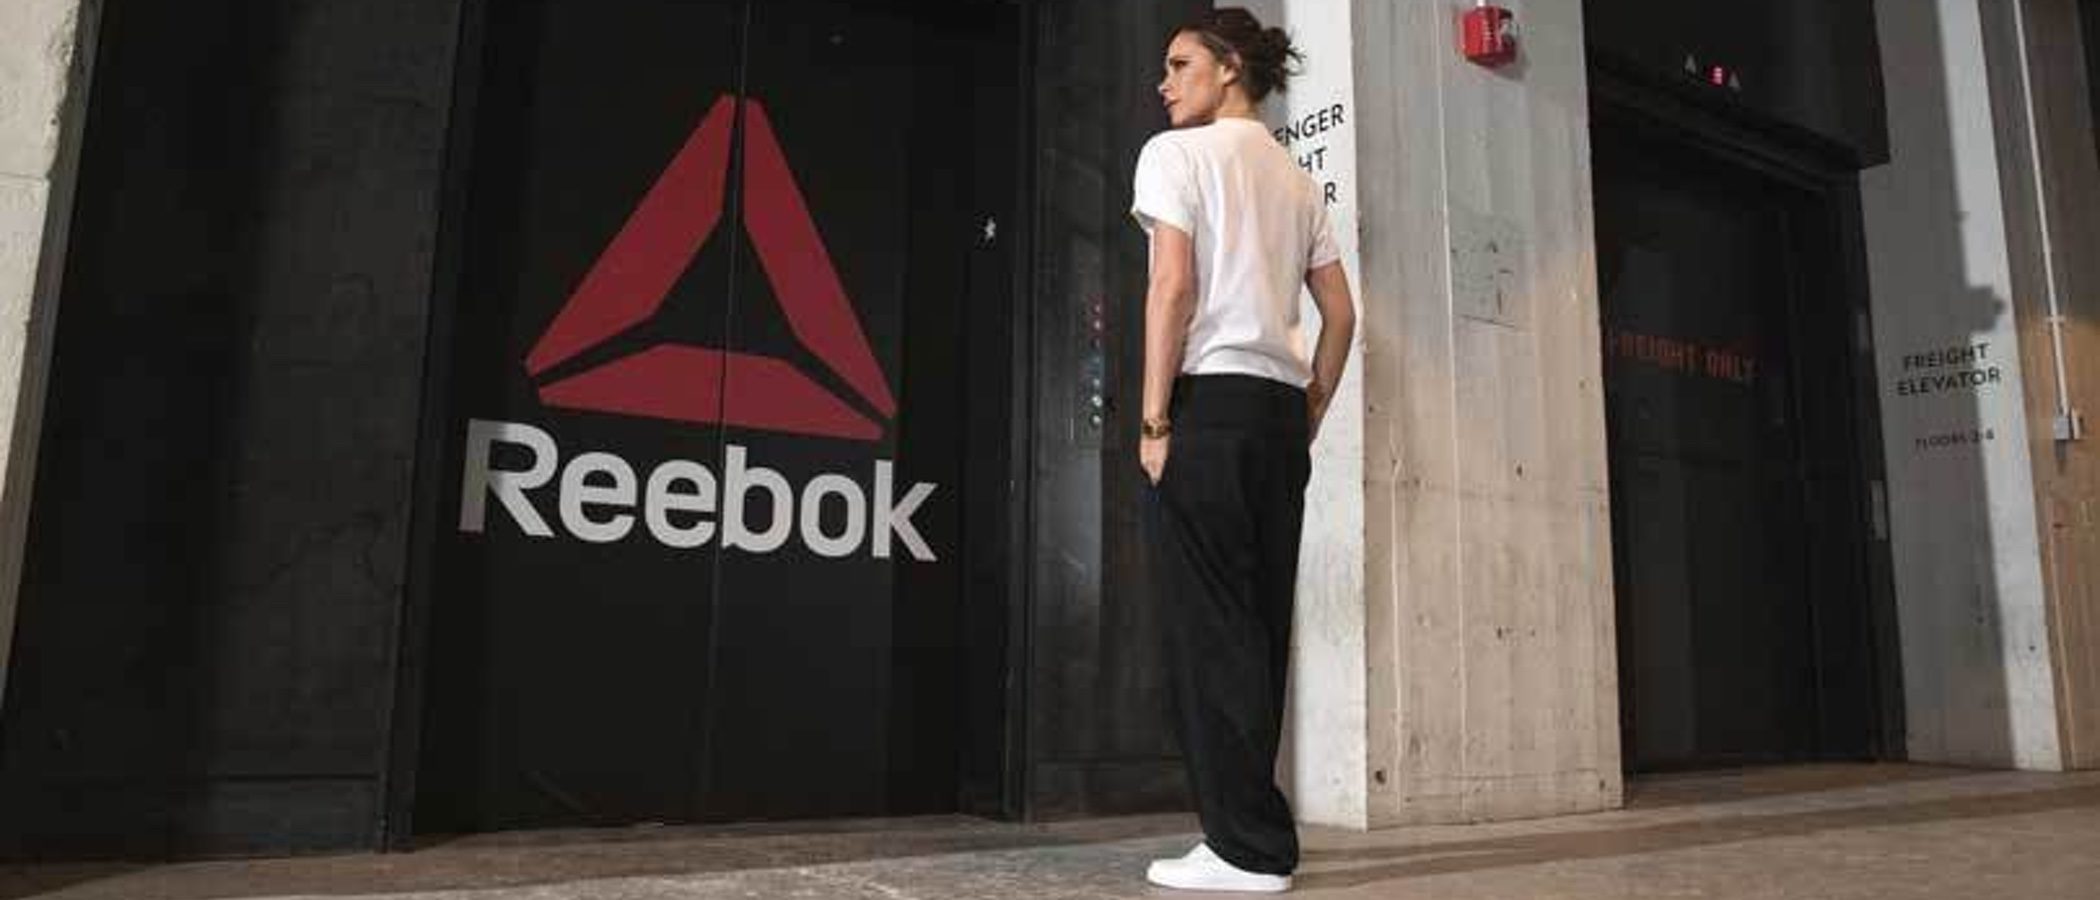 Victoria Beckham lanzará una colección con Reebok en 2018